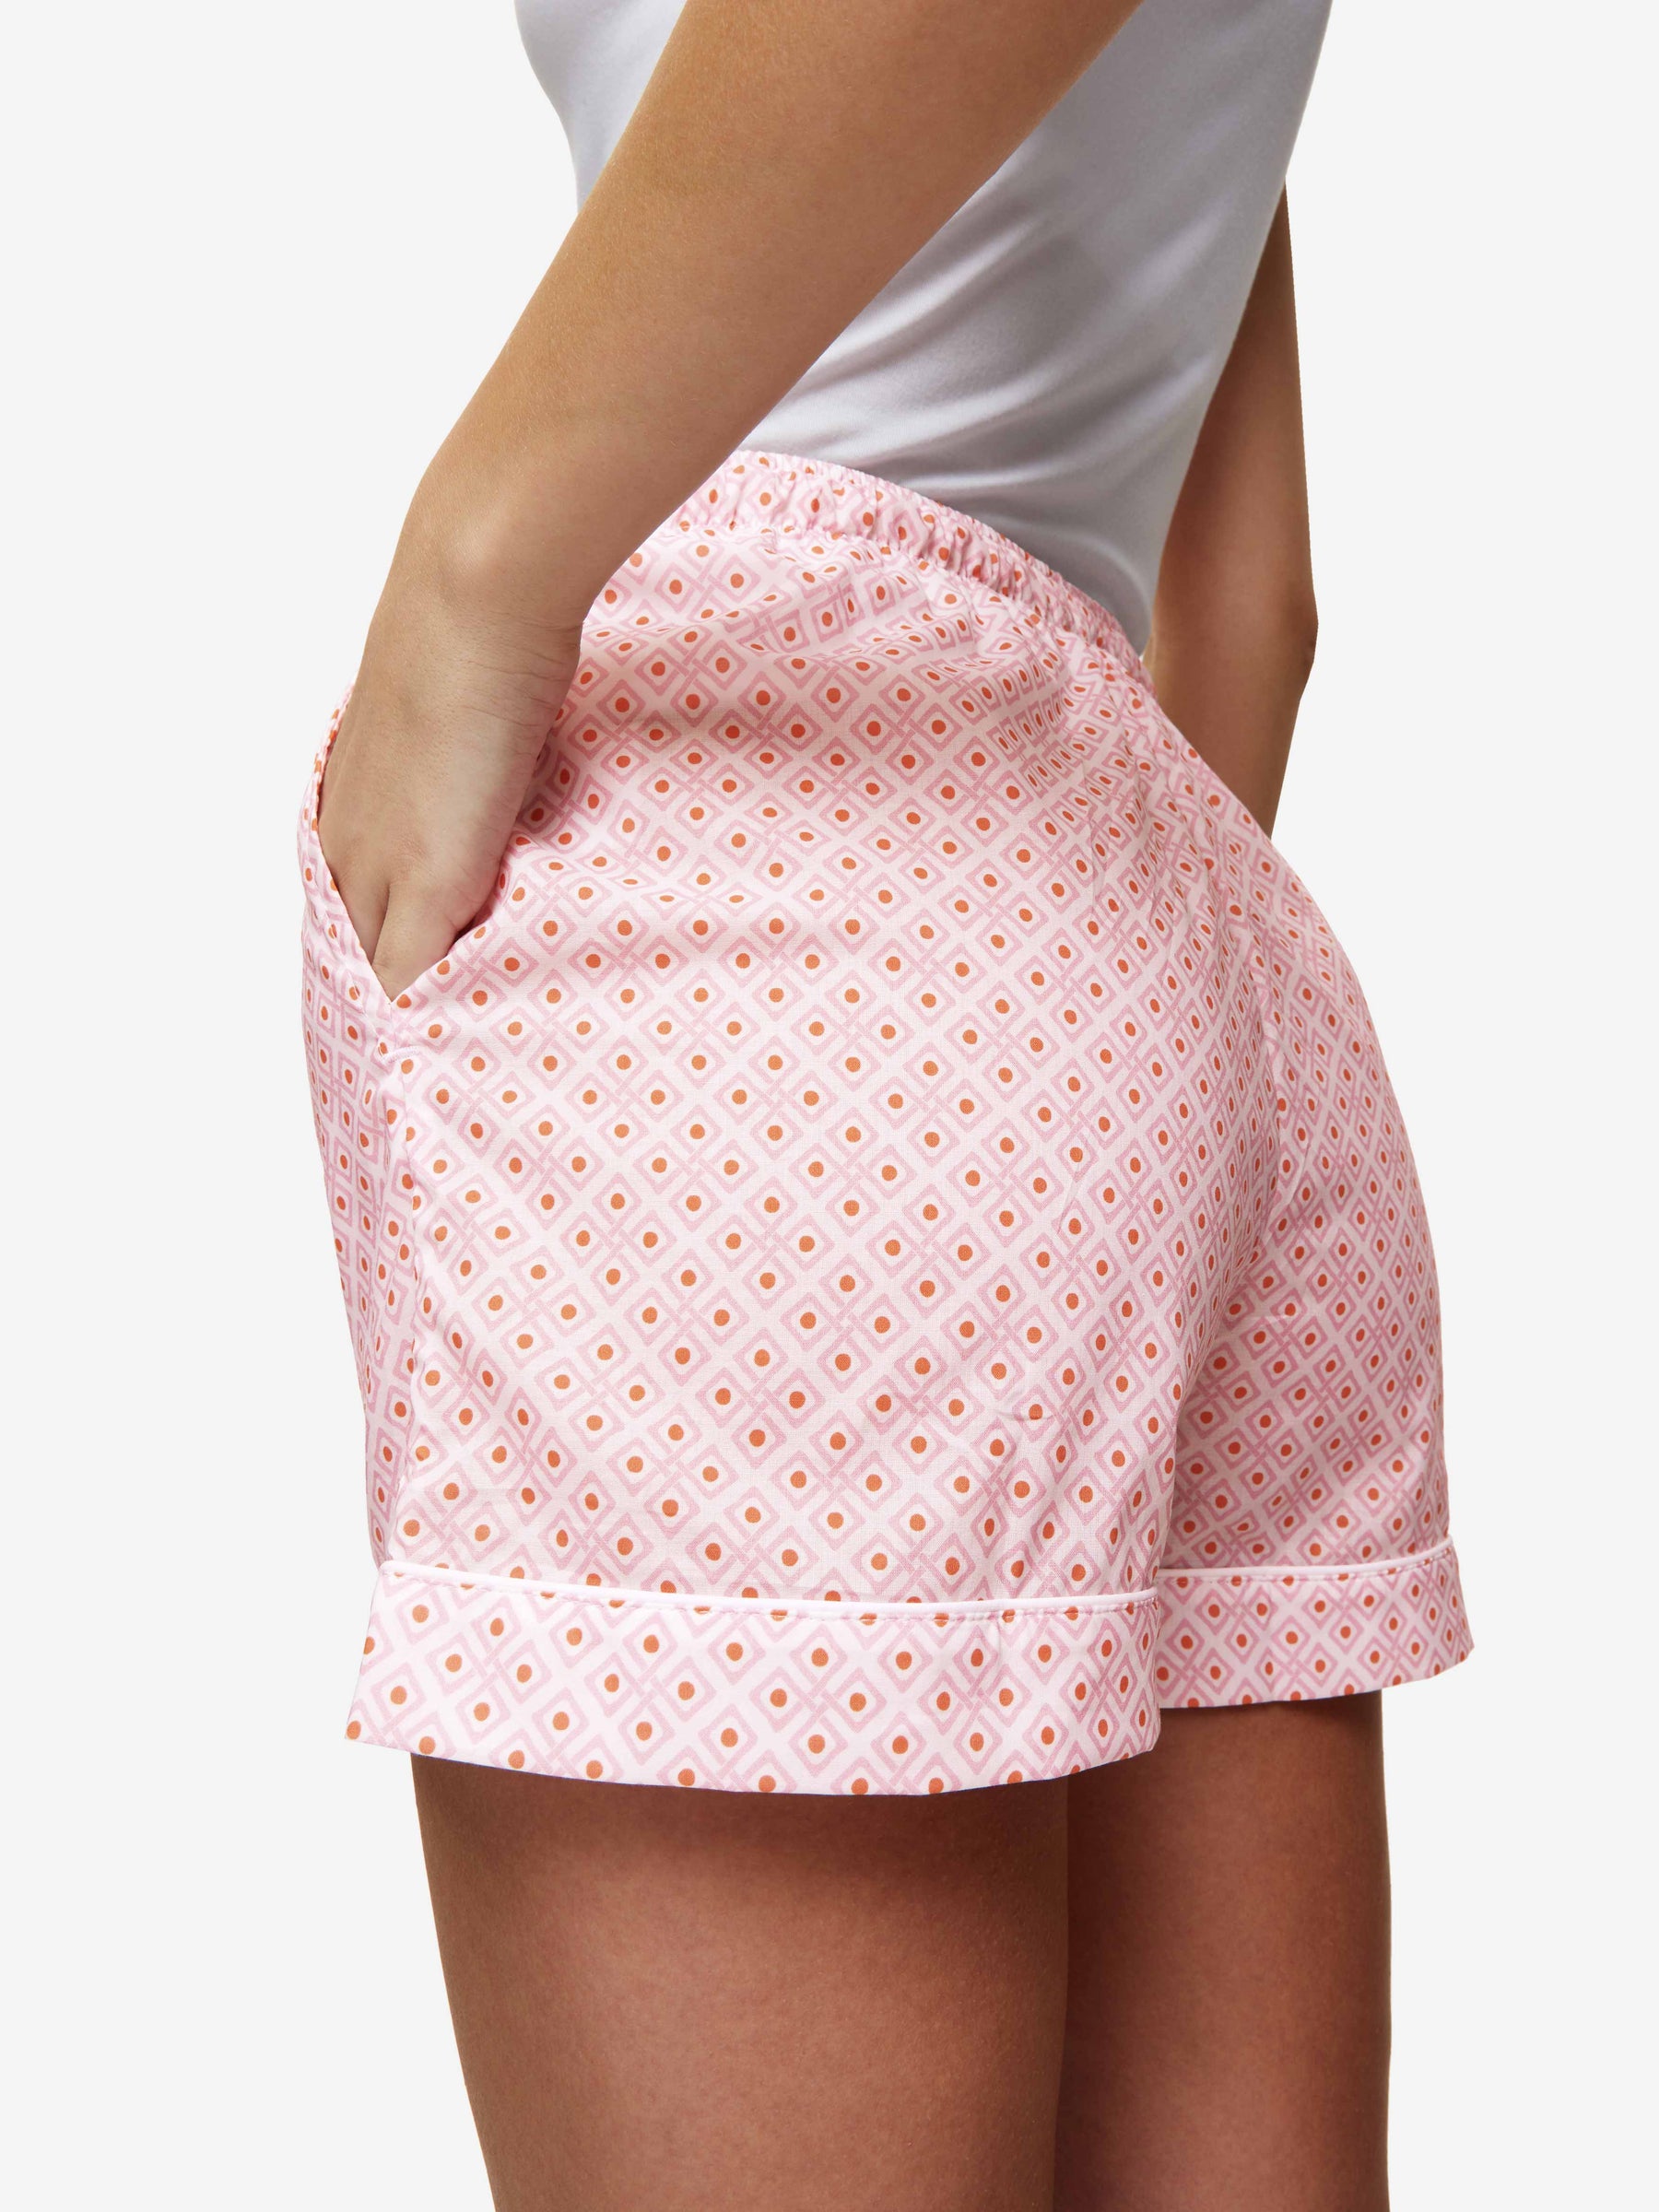 Women's Lounge Shorts Ledbury 56 Cotton Batiste Pink